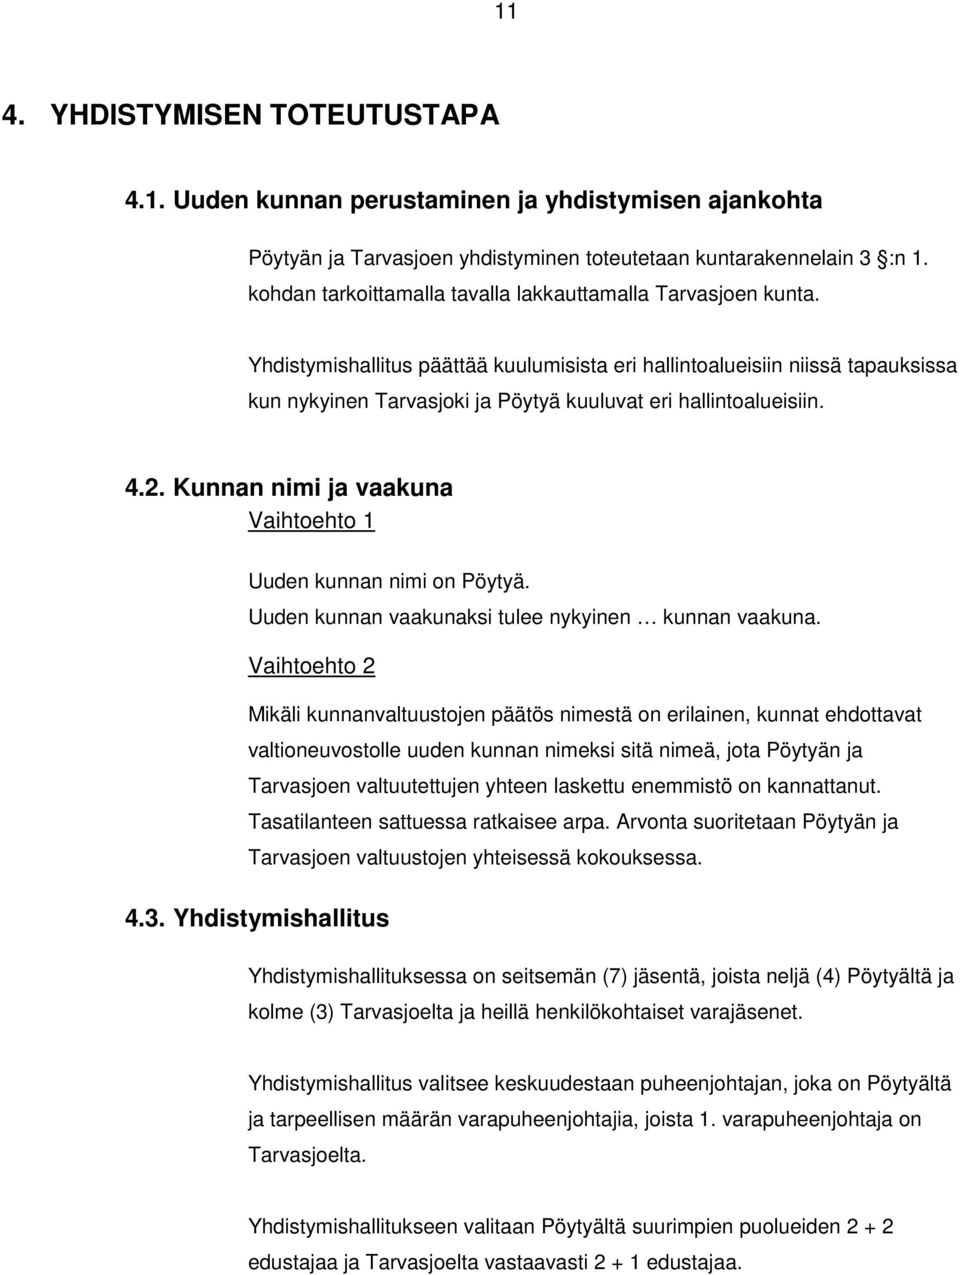 Yhdistymishallitus päättää kuulumisista eri hallintoalueisiin niissä tapauksissa kun nykyinen Tarvasjoki ja Pöytyä kuuluvat eri hallintoalueisiin. 4.2.